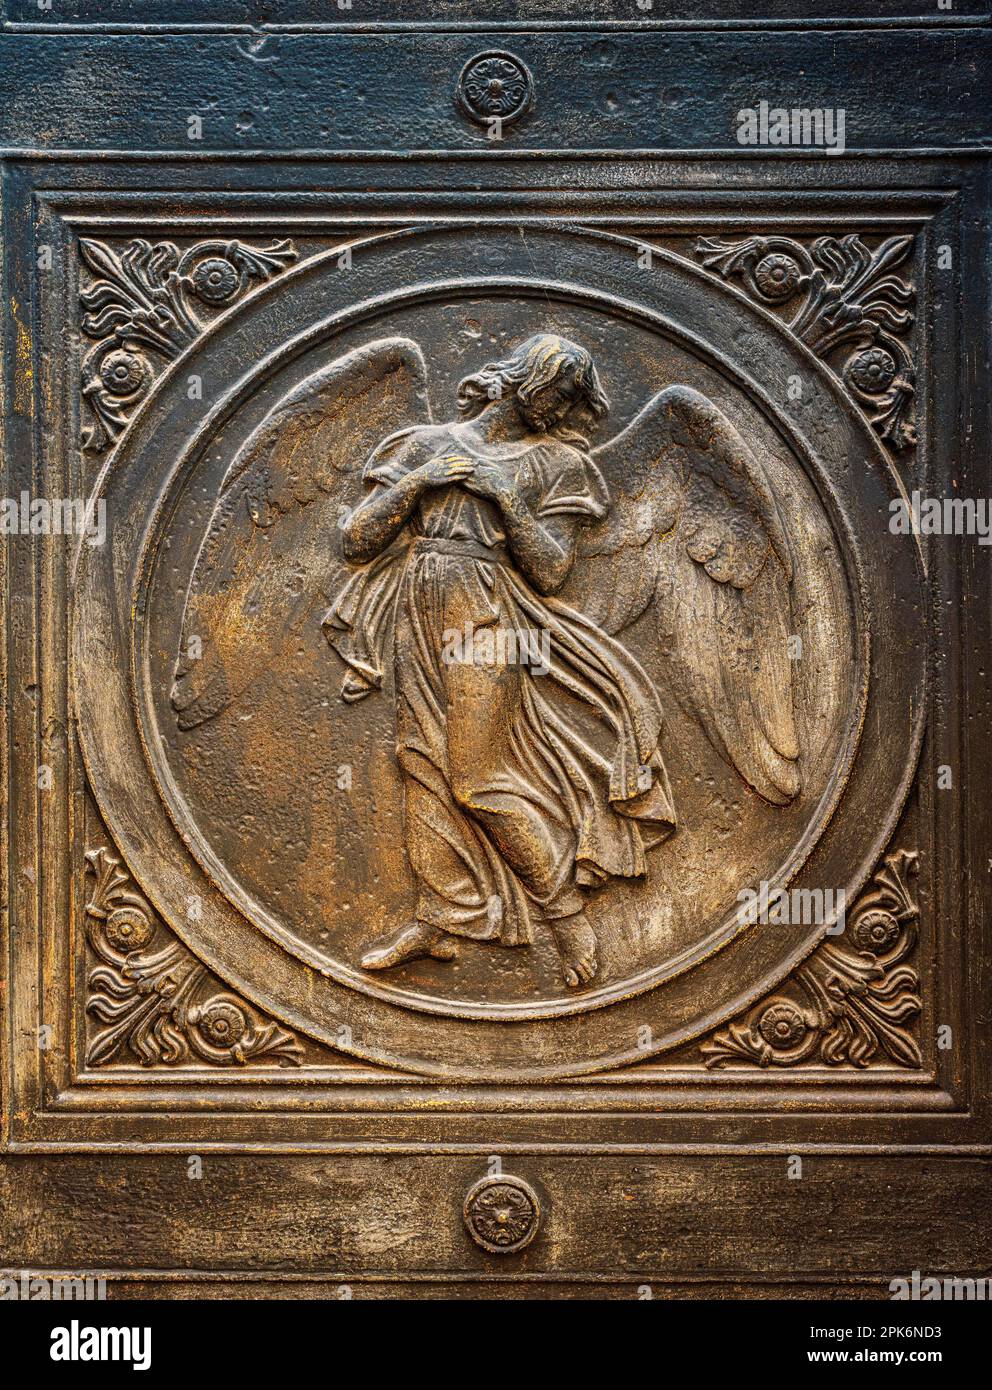 Portail avec des médaillons de bas-relief, Eglise Friedrichwerdersche, Werderscher Markt, Berlin, Allemagne Banque D'Images